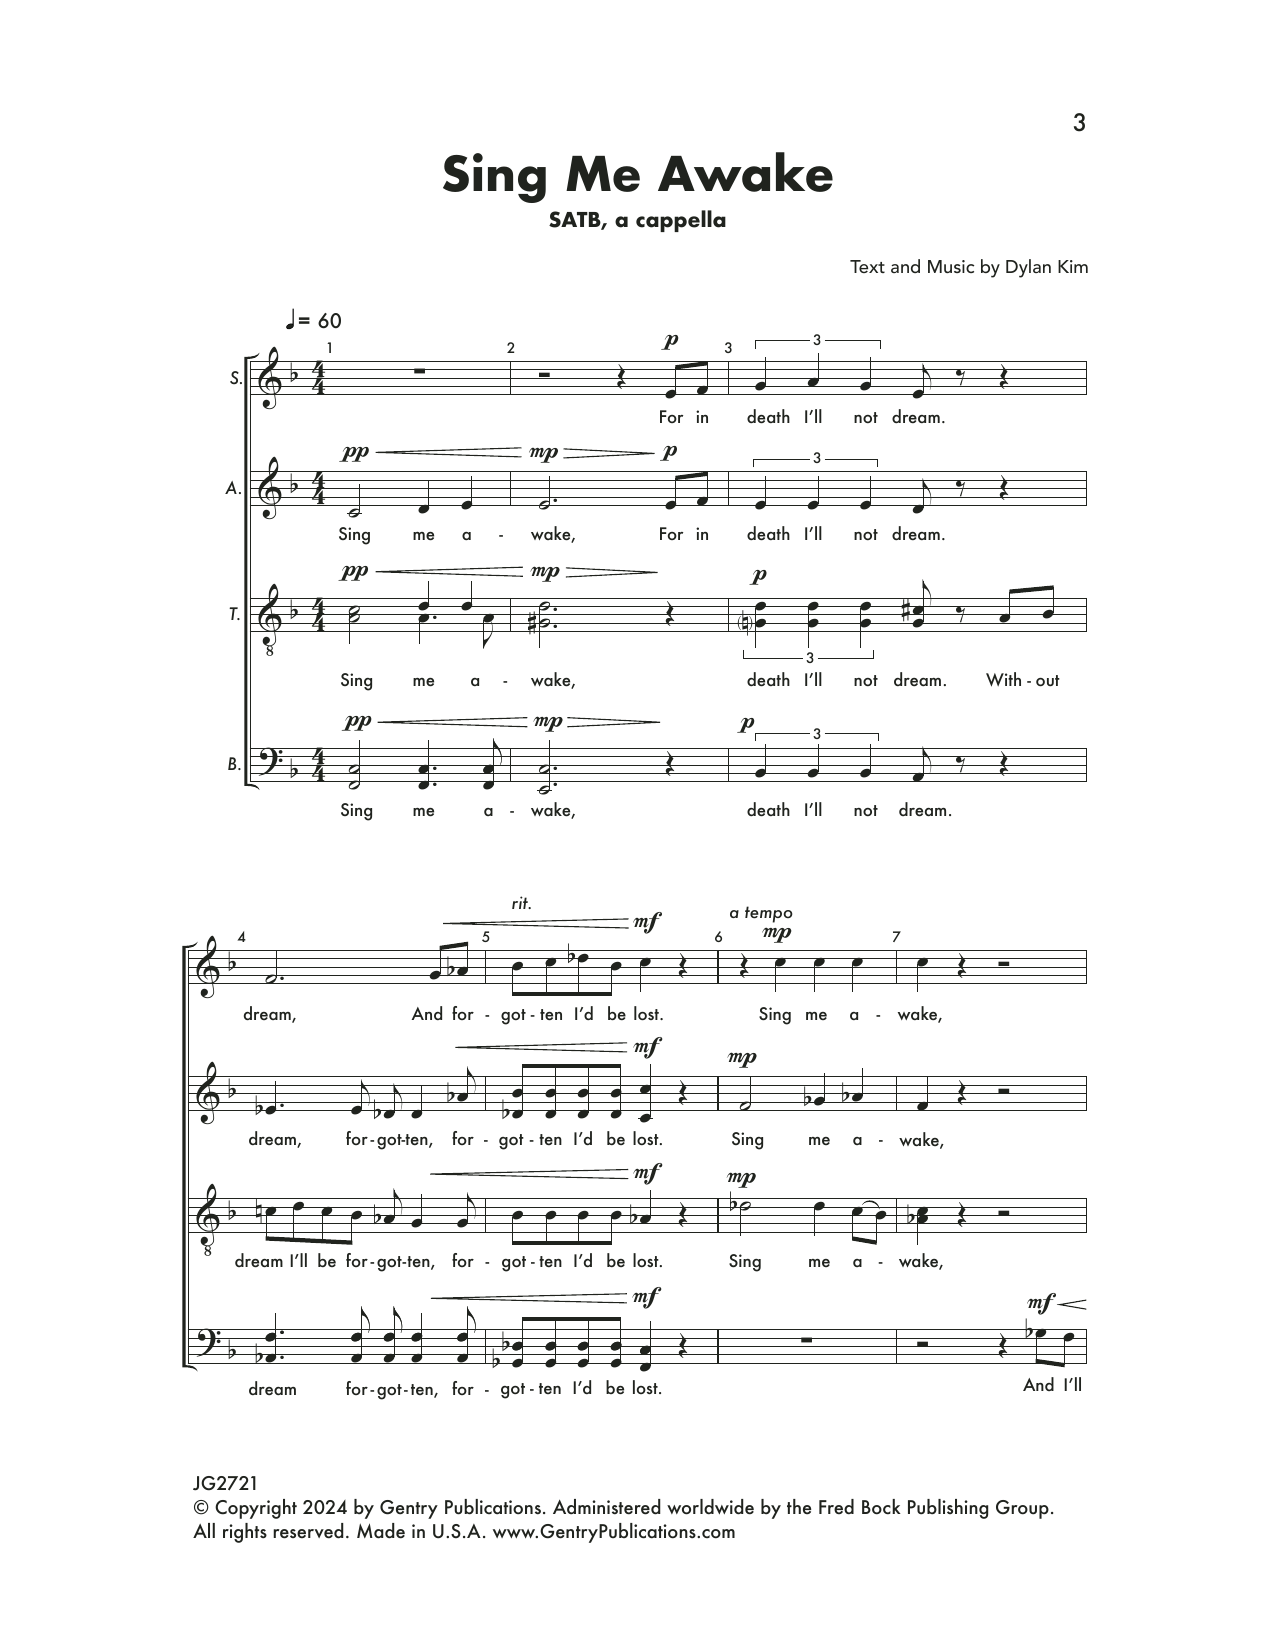 Dylan Kim Sing Me Awake Sheet Music Notes & Chords for SATB Choir - Download or Print PDF